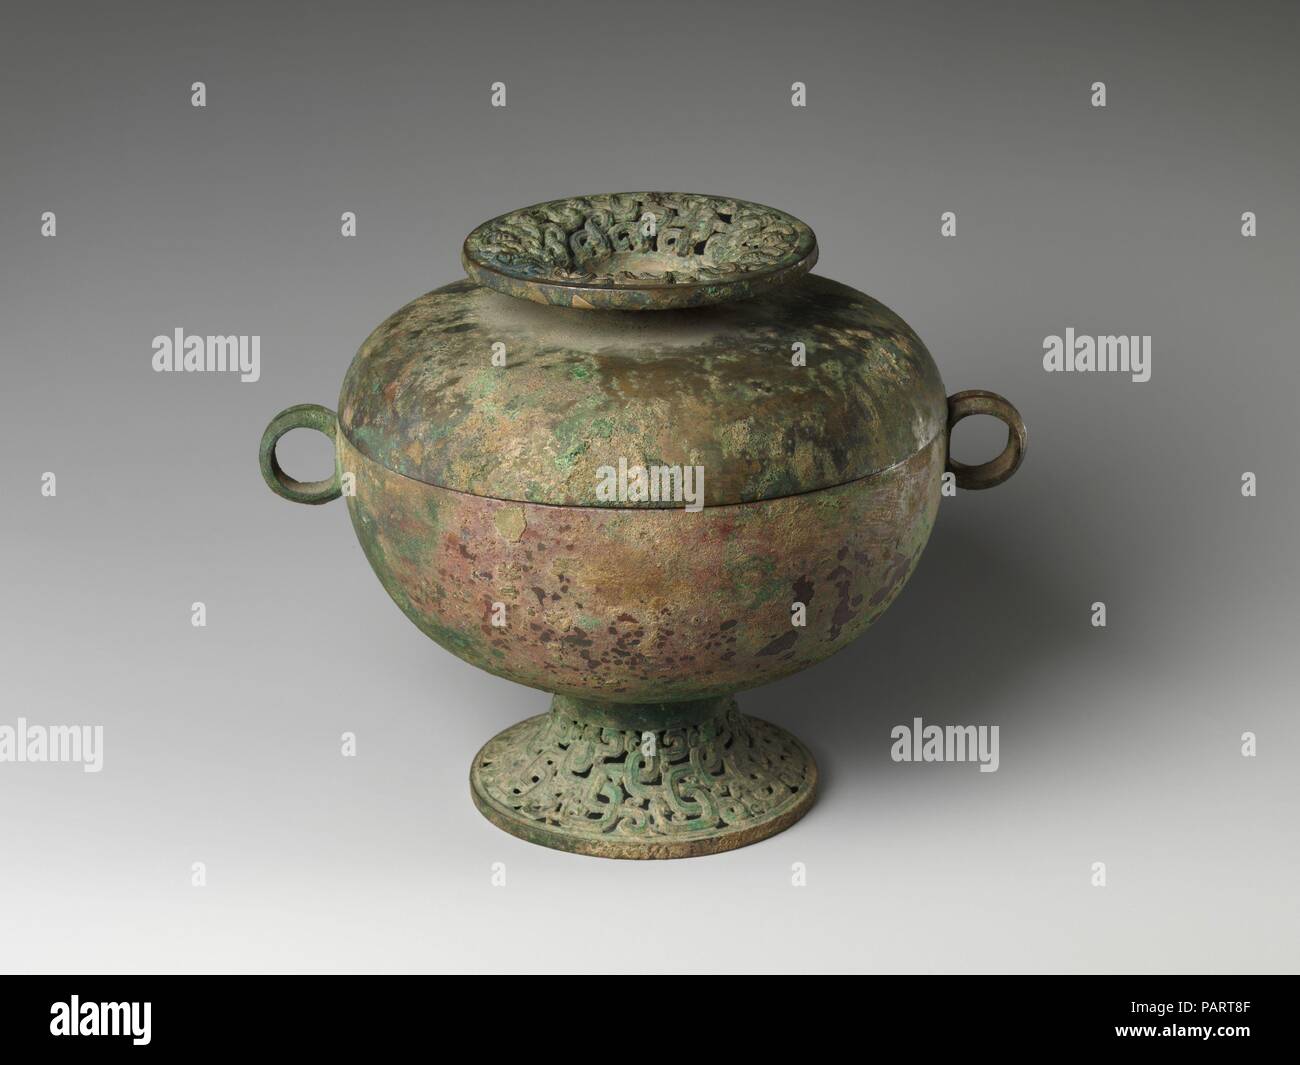 Le navire ayant des grains (Dou). Culture : la Chine. Dimensions : H. 7. (17,8 cm) ; W. (avec oreilles) 9. (22,9 cm) ; Diam. de couvercle : 7 1/4 in. (18,4 cm) ; Diam. de la jante (intérieur) : 6 3/4 in. (17,1 cm) ; Diam. de pied : 4 1/4 in. (10,8 cm). Date : 5ème siècle avant JC. Musée : Metropolitan Museum of Art, New York, USA. Banque D'Images